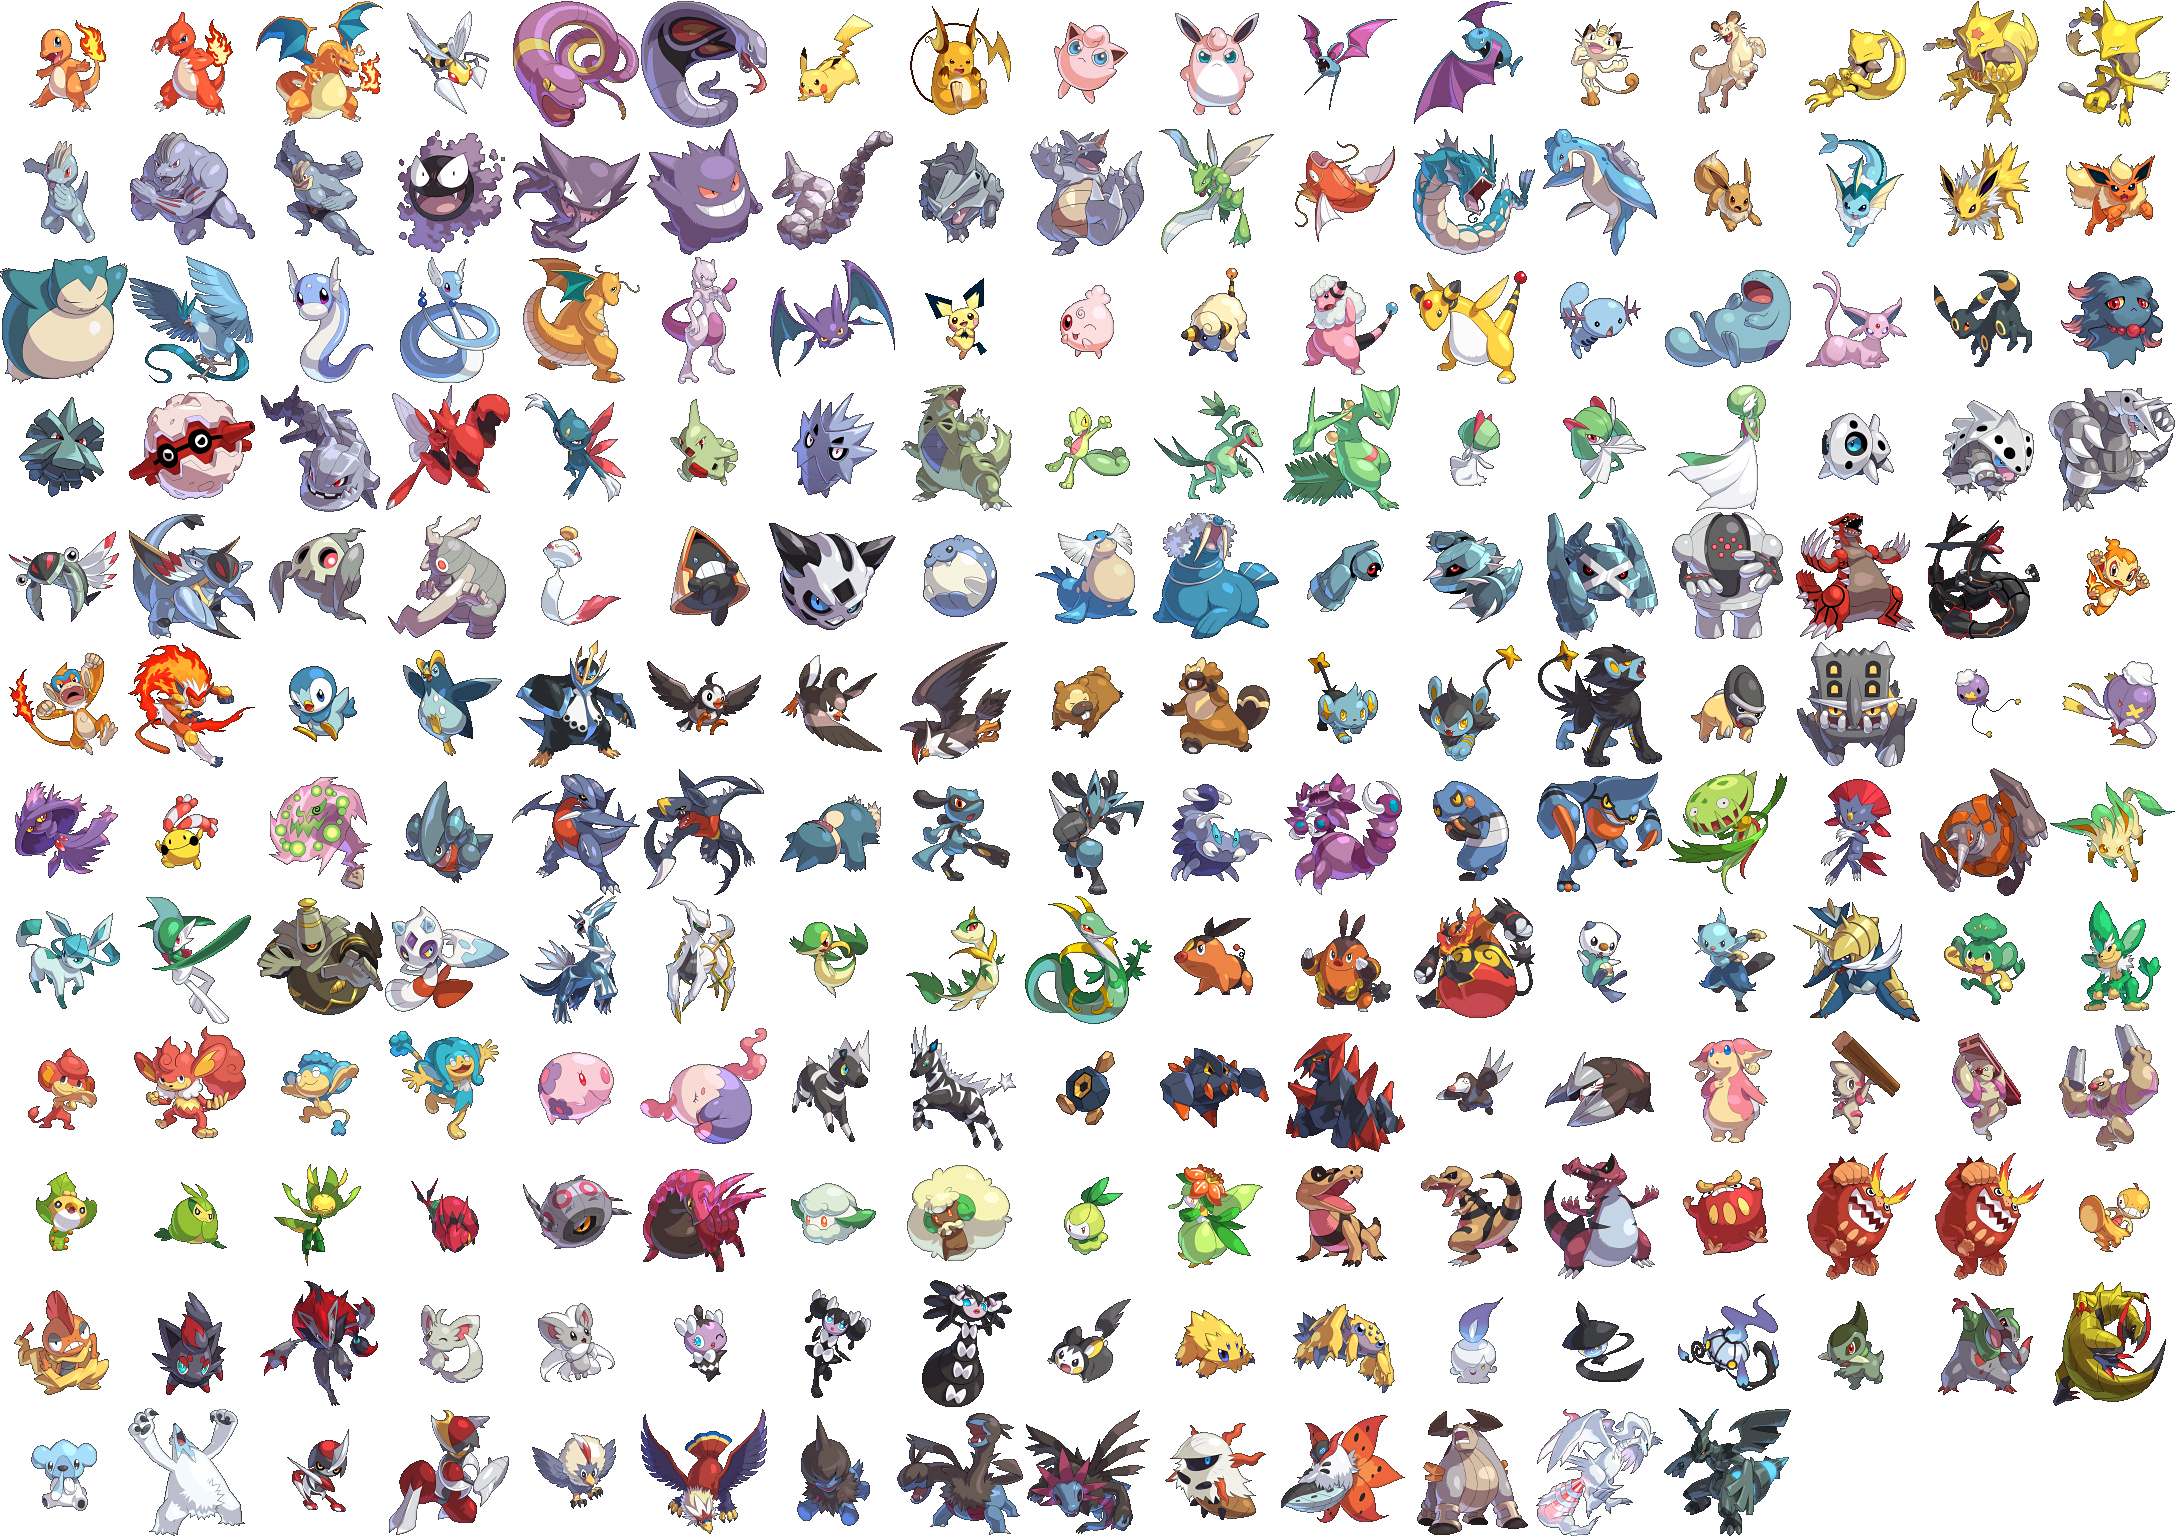 Pokémon HeartGold & SoulSilver Pokédex Tier List (Community